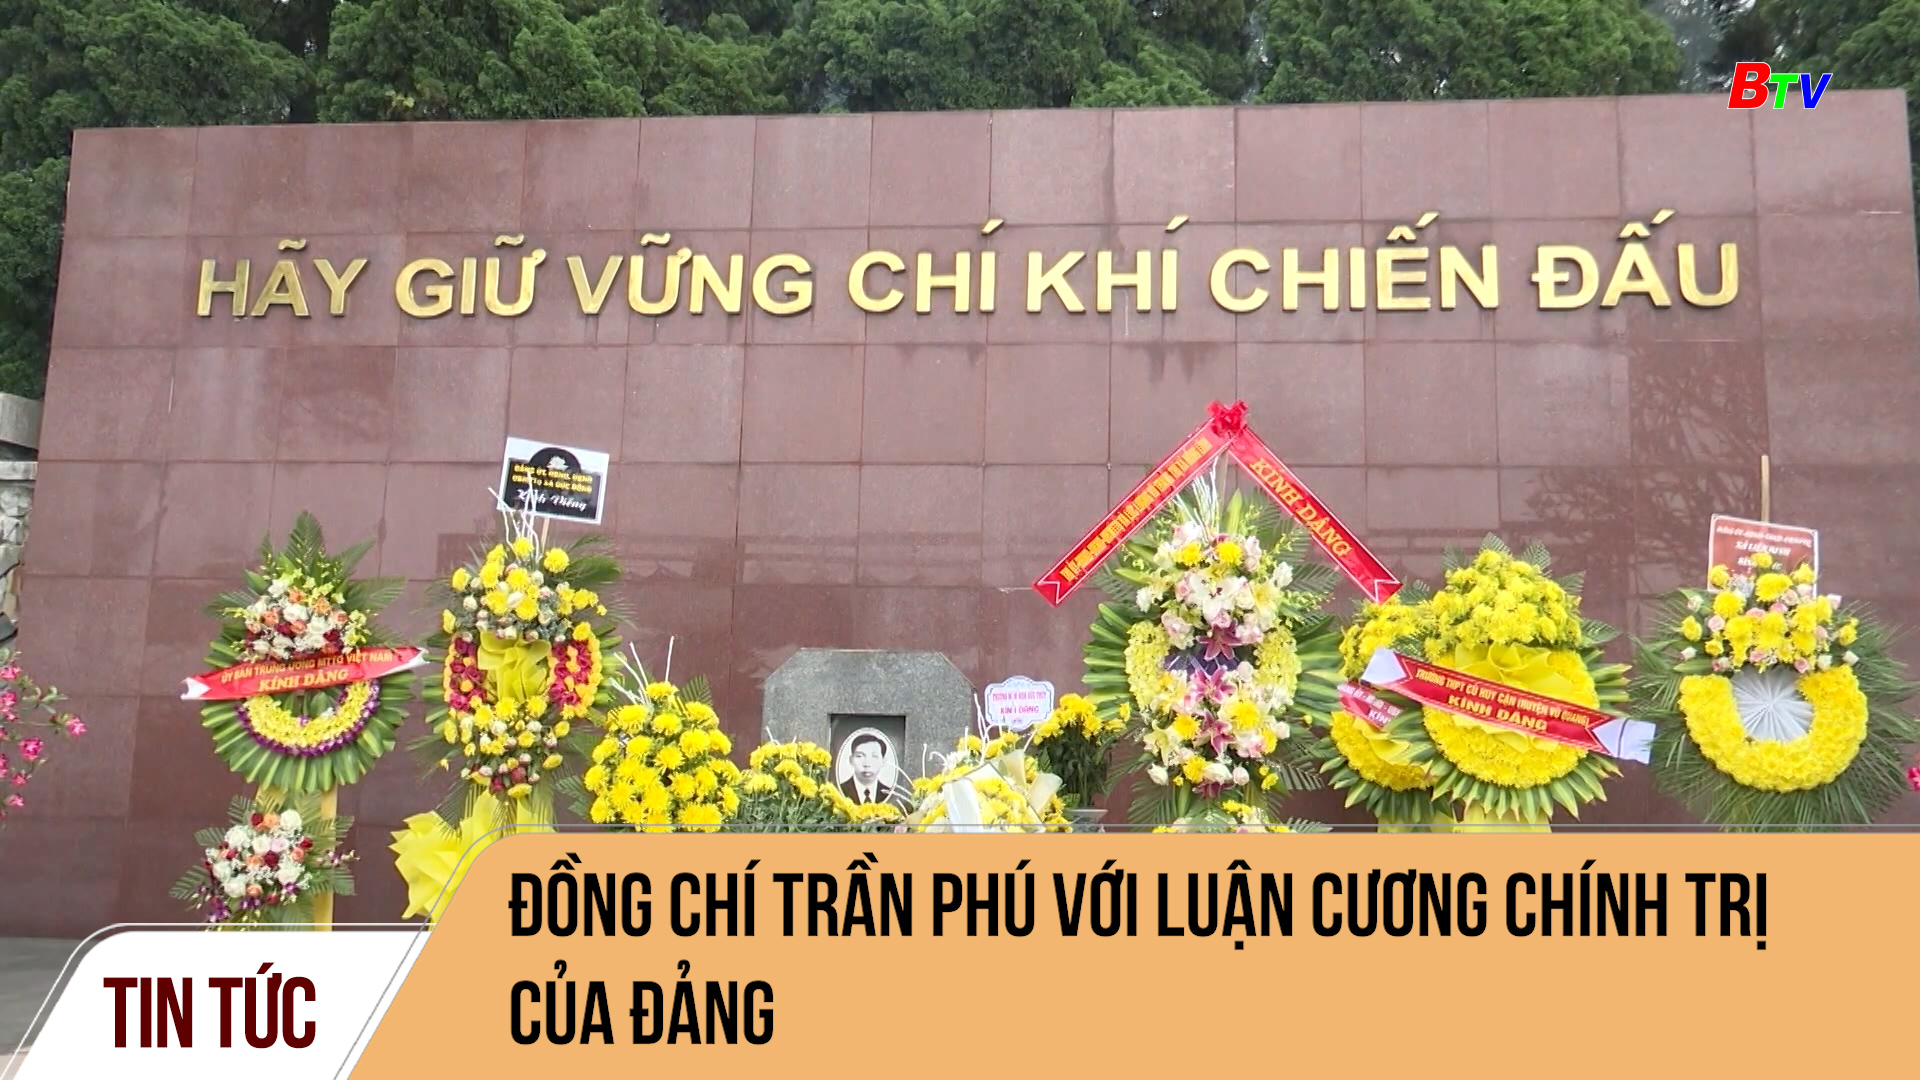 Đồng chí Trần Phú với Luận Cương chính trị của Đảng